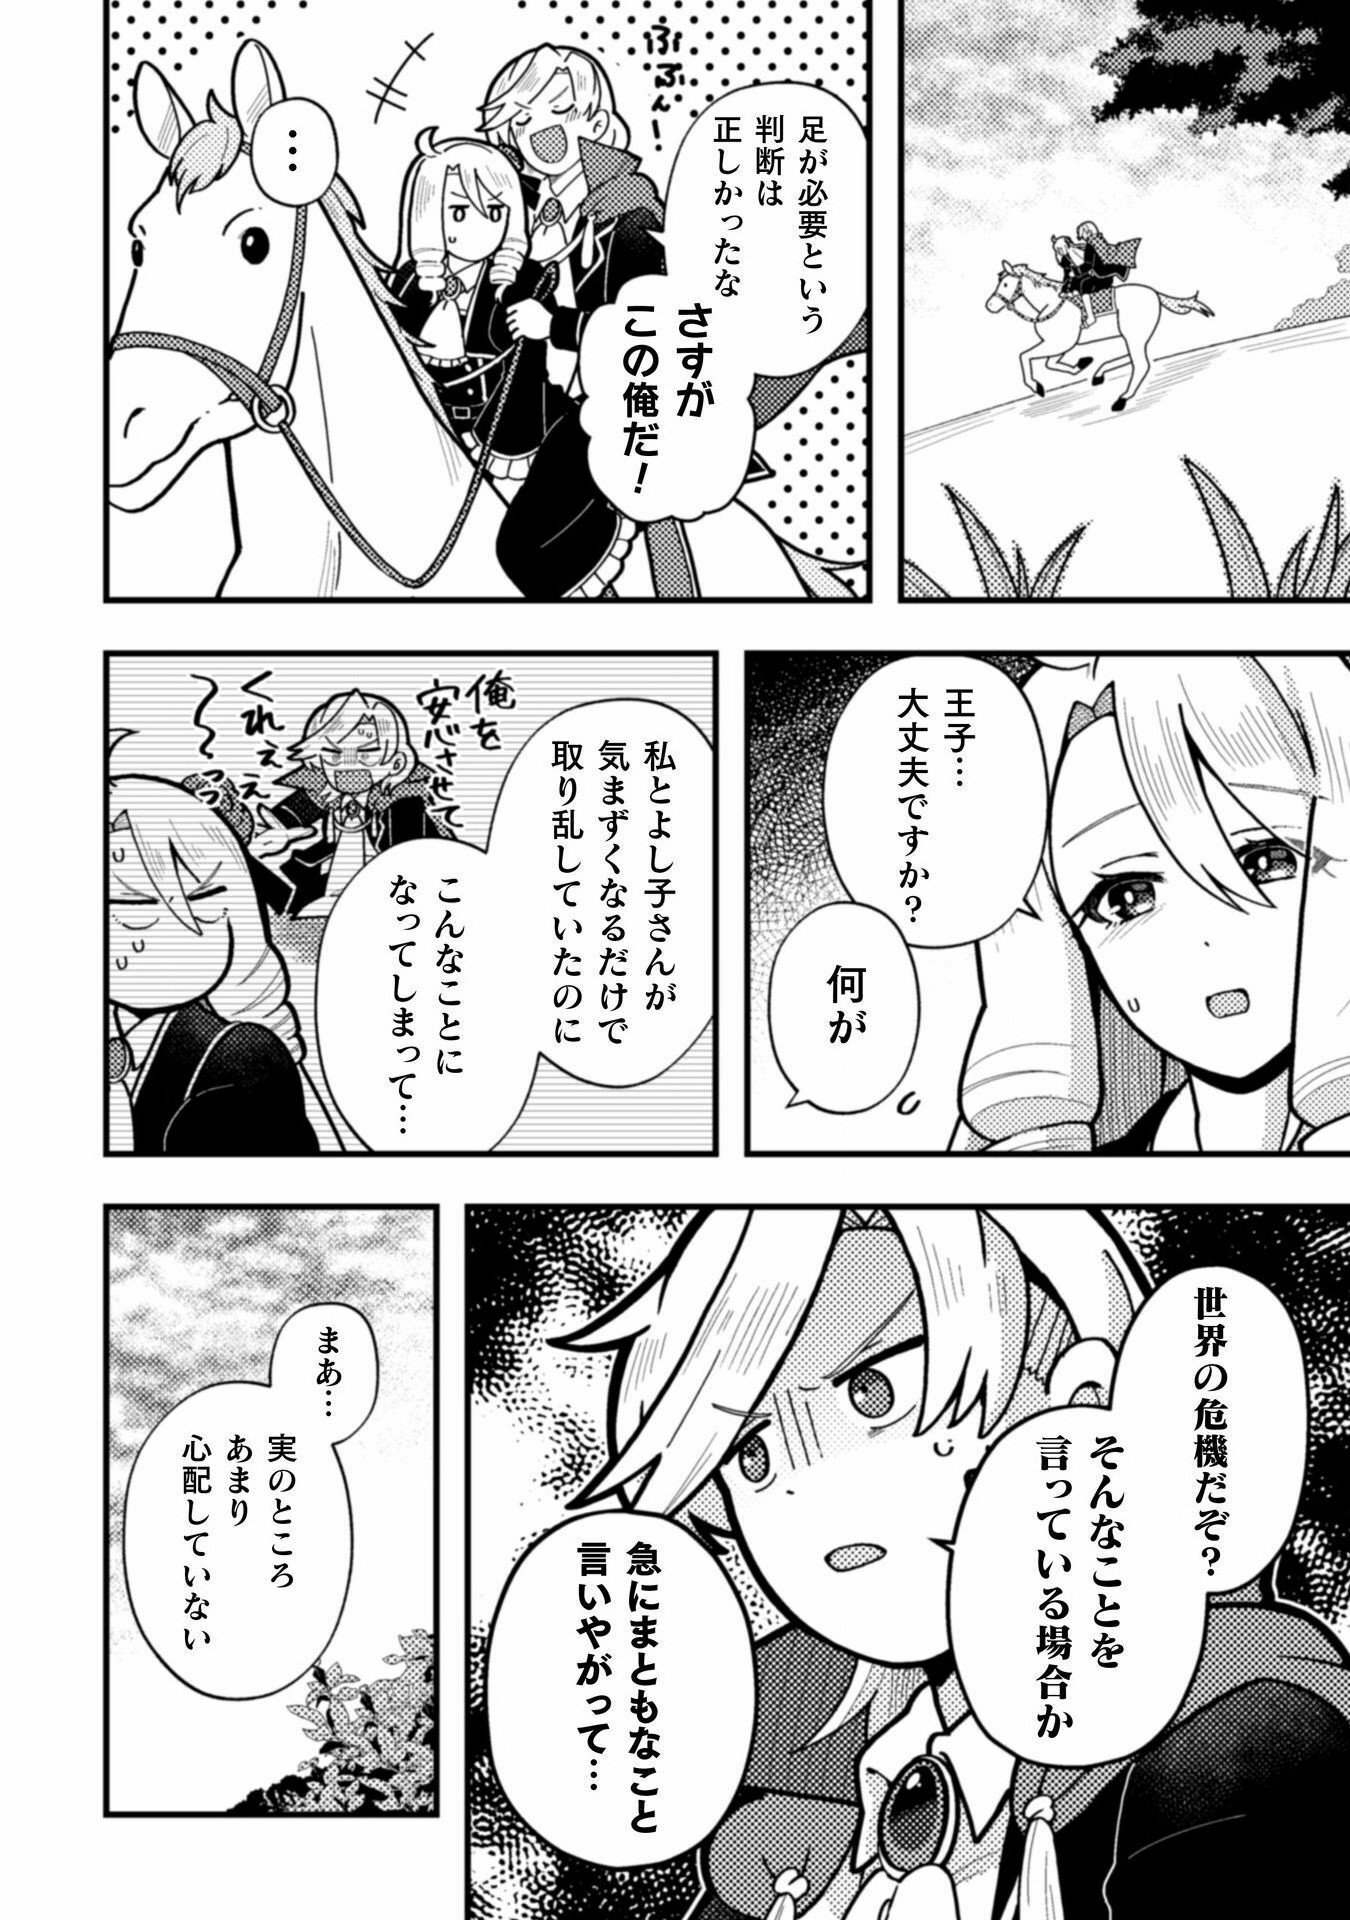 Otome Game no Akuyaku Reijou ni Tensei shitakedo Follower ga Fukyoushiteta Chisiki shikanai - Chapter 22 - Page 18